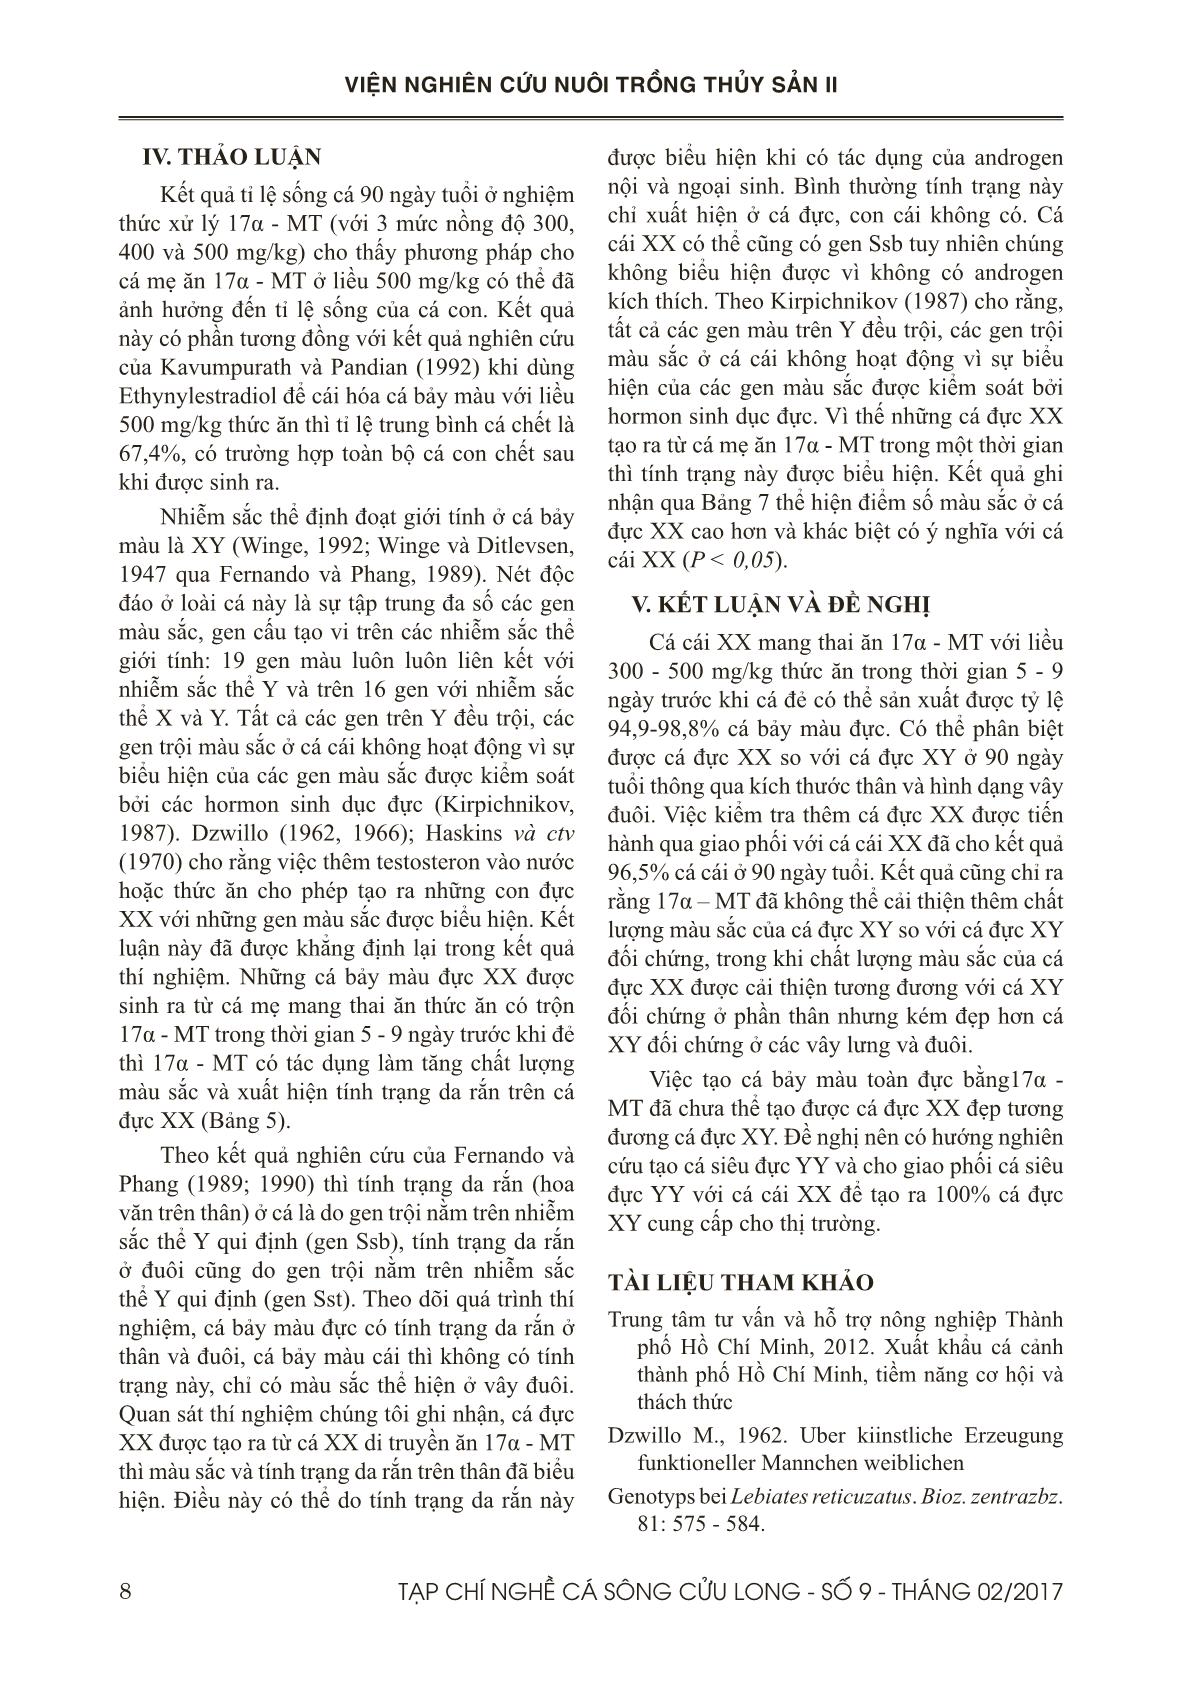 Tạp chí Nghề cá sông Cửu Long - Số 09 - Tháng 2/2017 trang 8